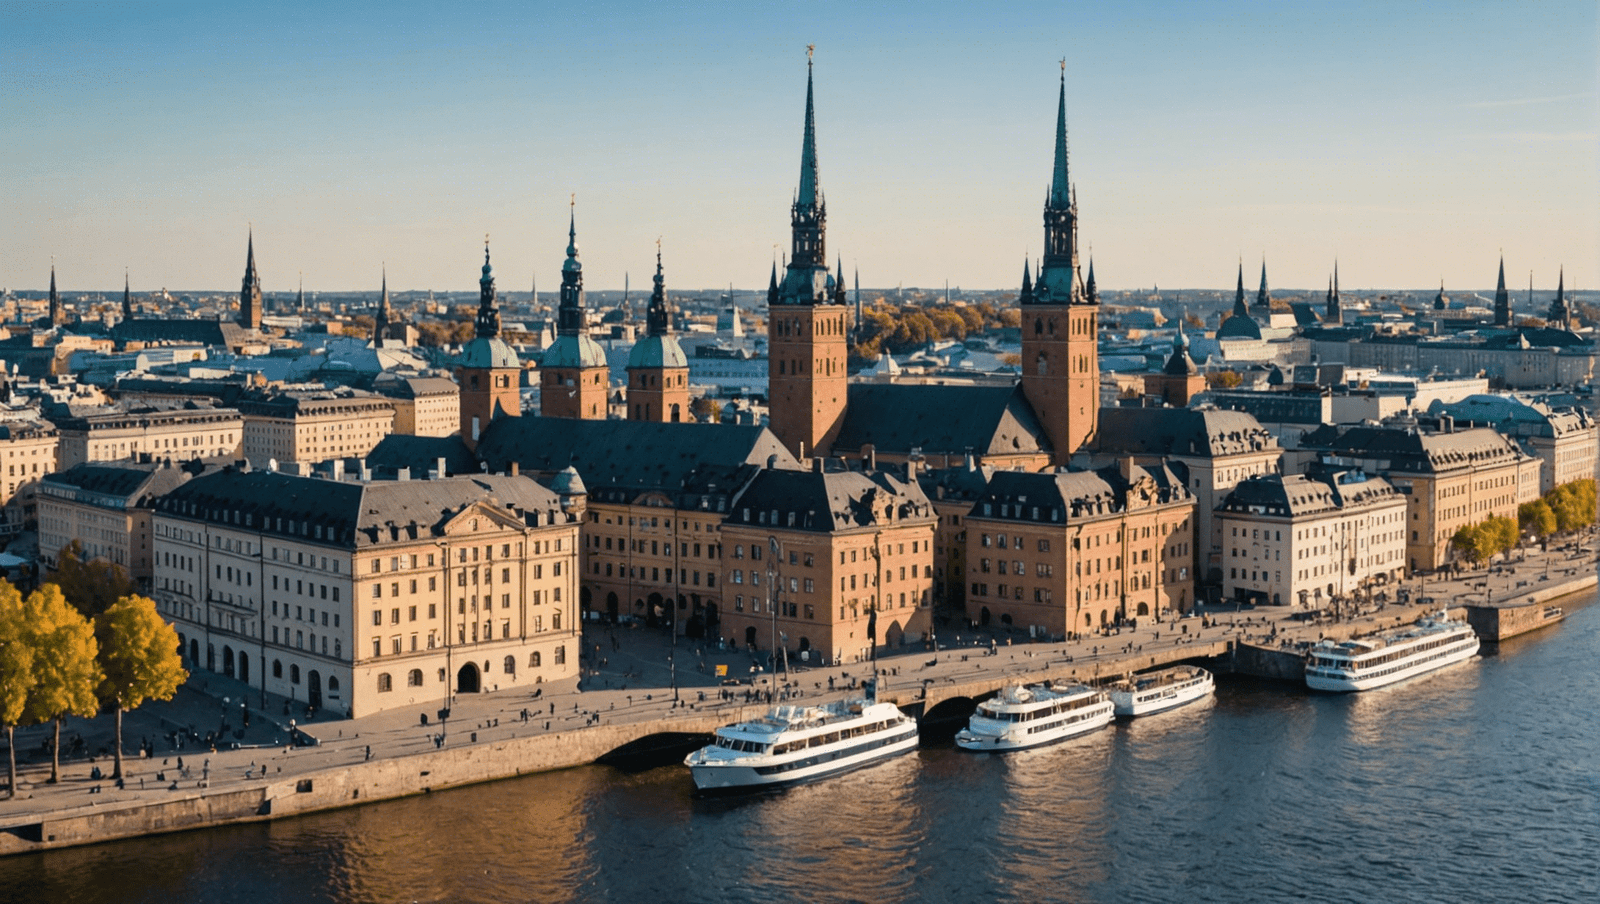 découvrez stockholm : le guide de voyage ultime pour explorer la capitale suédoise. trouvez les meilleures attractions, restaurants et activités à stockholm pour un séjour mémorable.